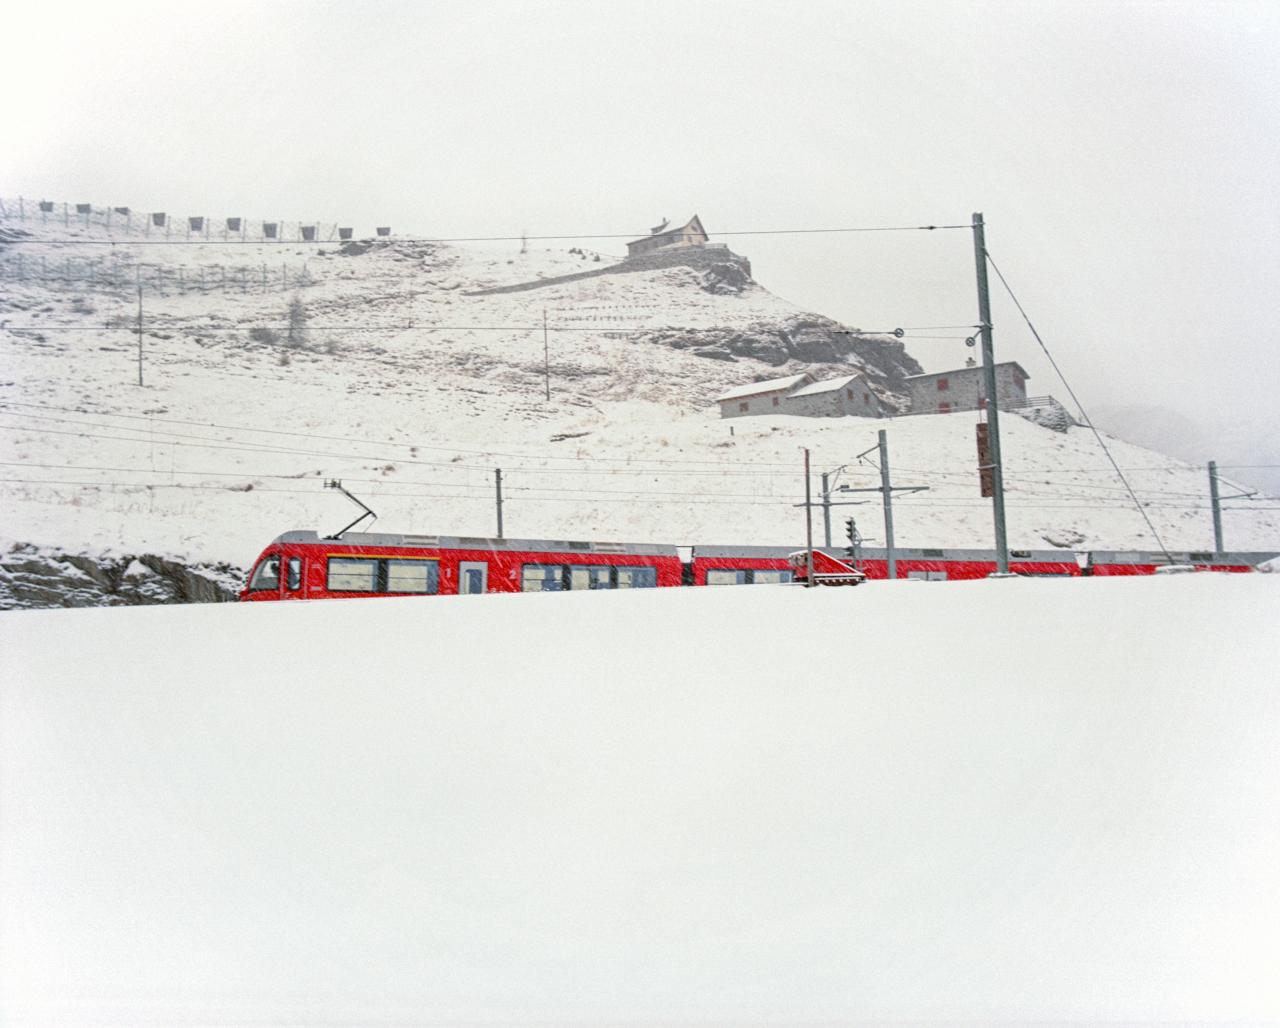 train in snow